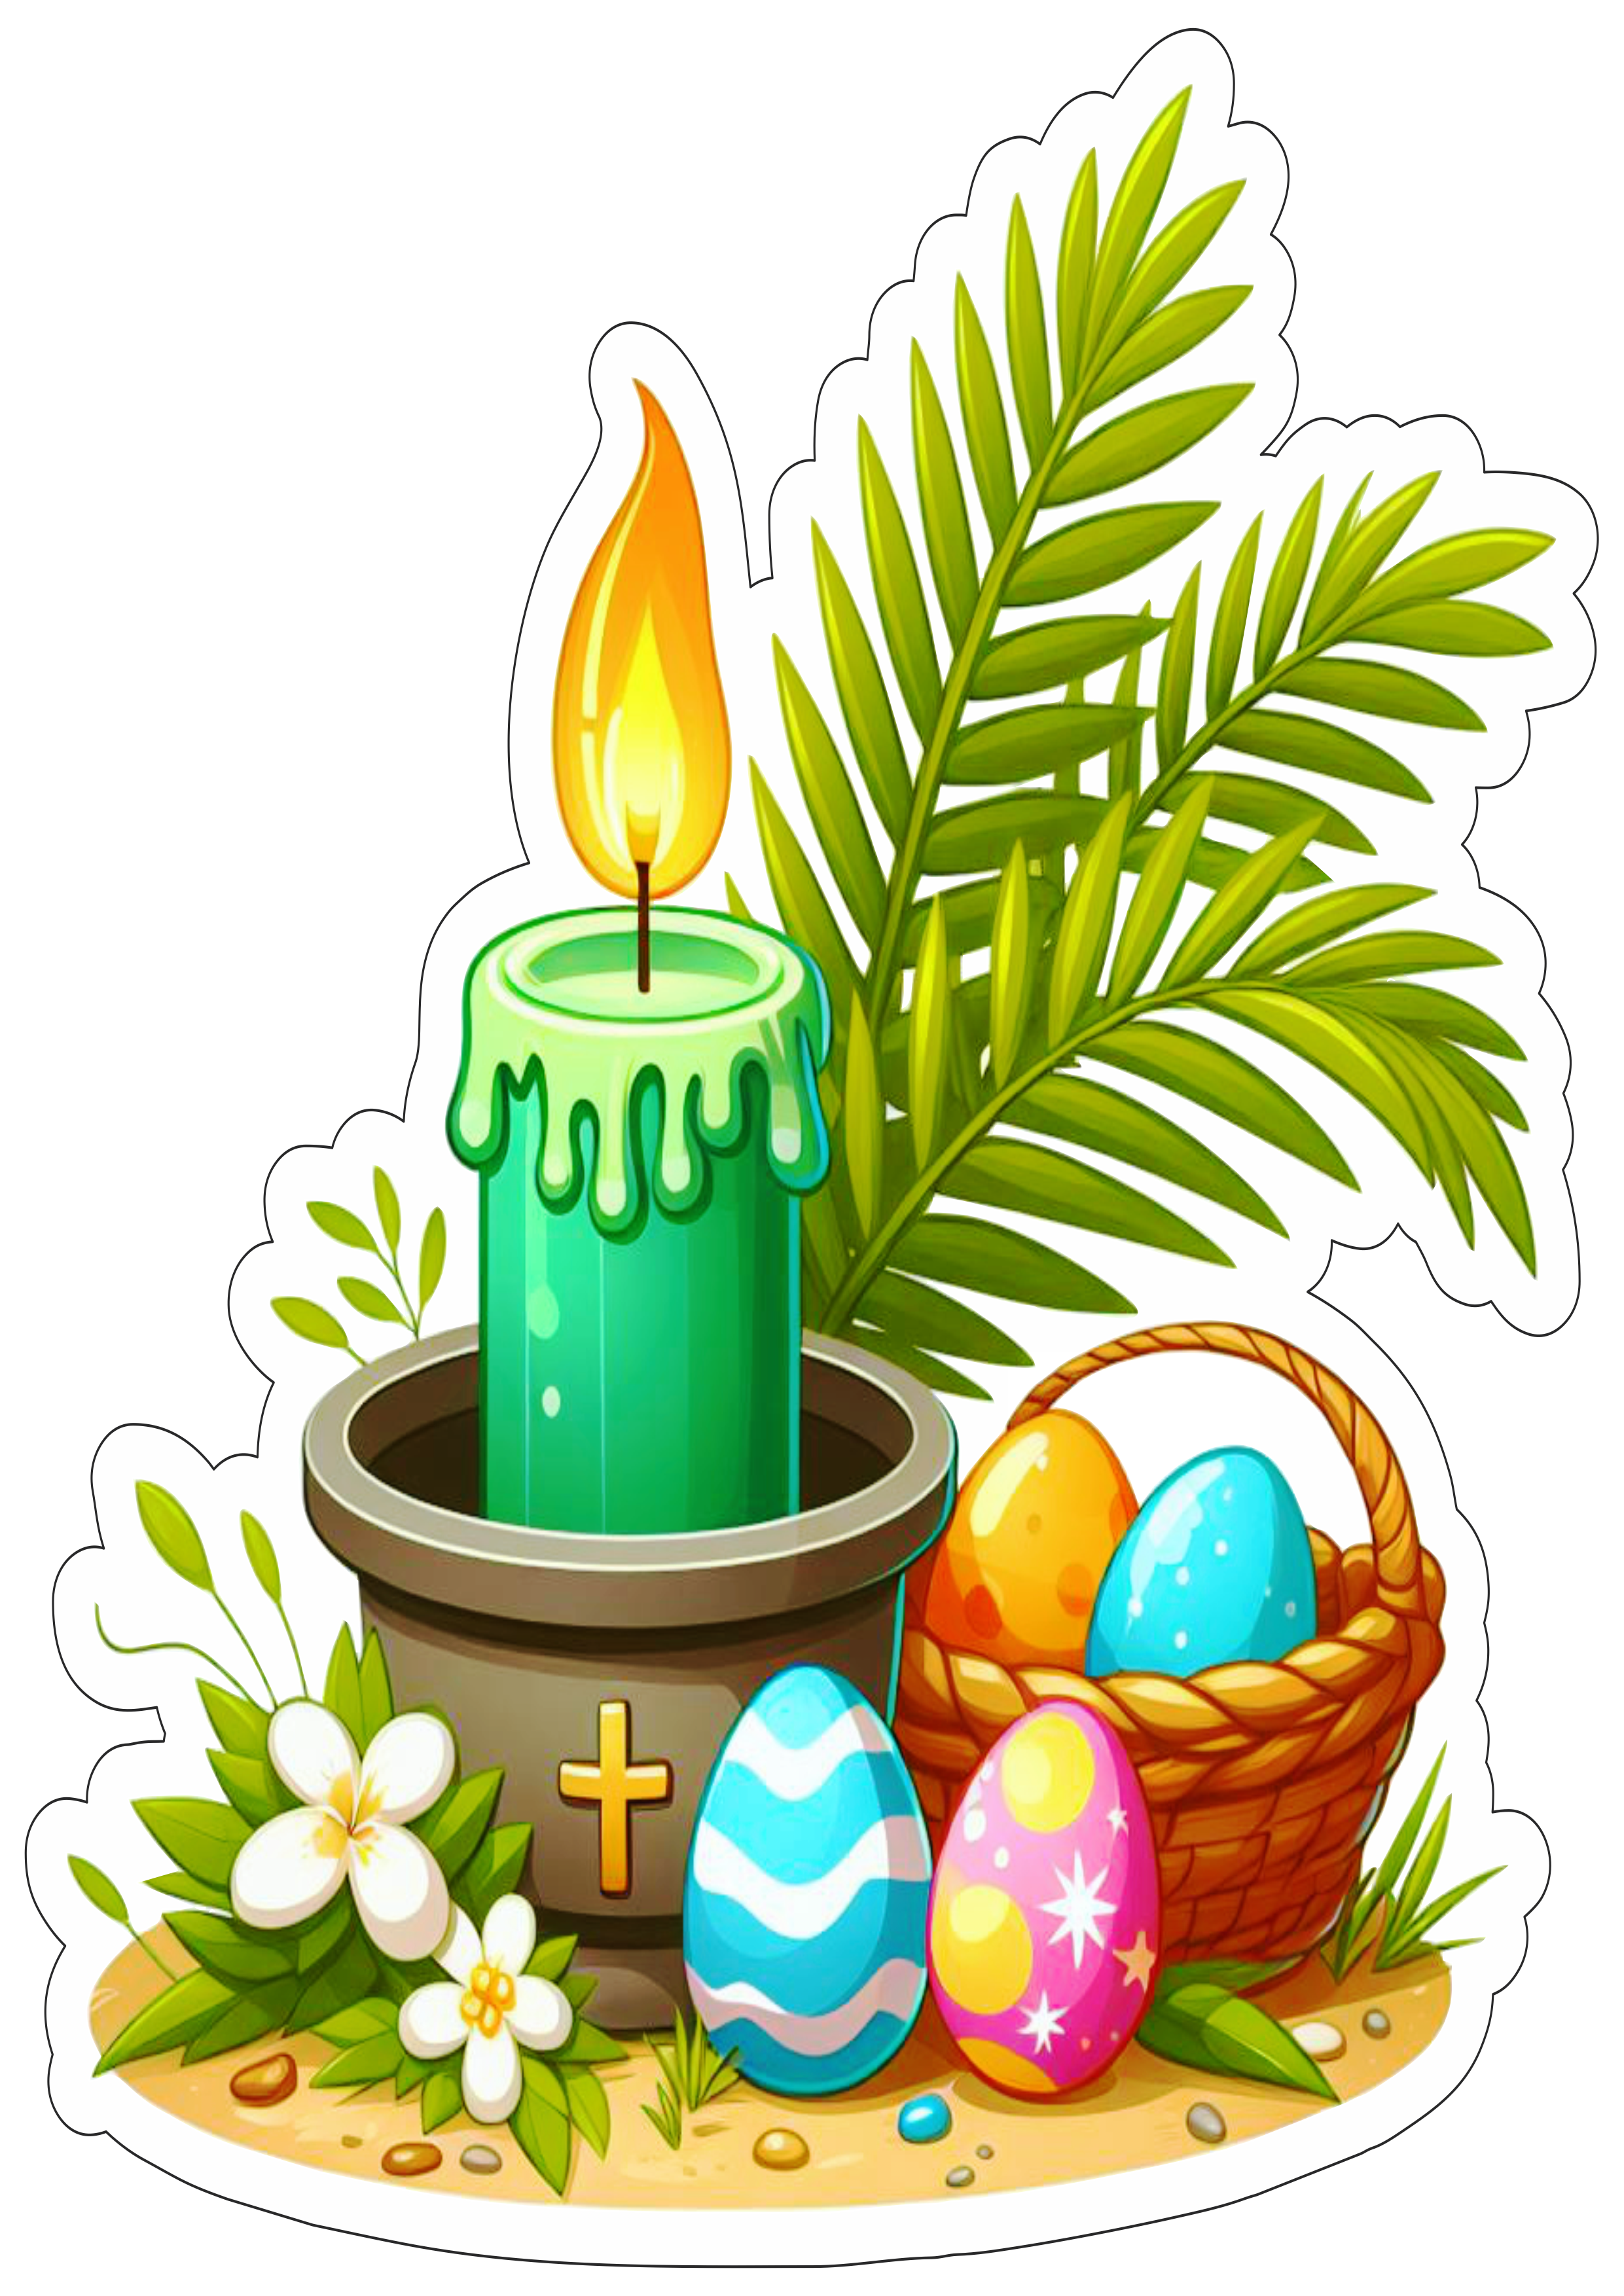 Símbolos da páscoa desenho vela colorida ramos fundo transparente com contorno artes gráficas ovos de chocolate png